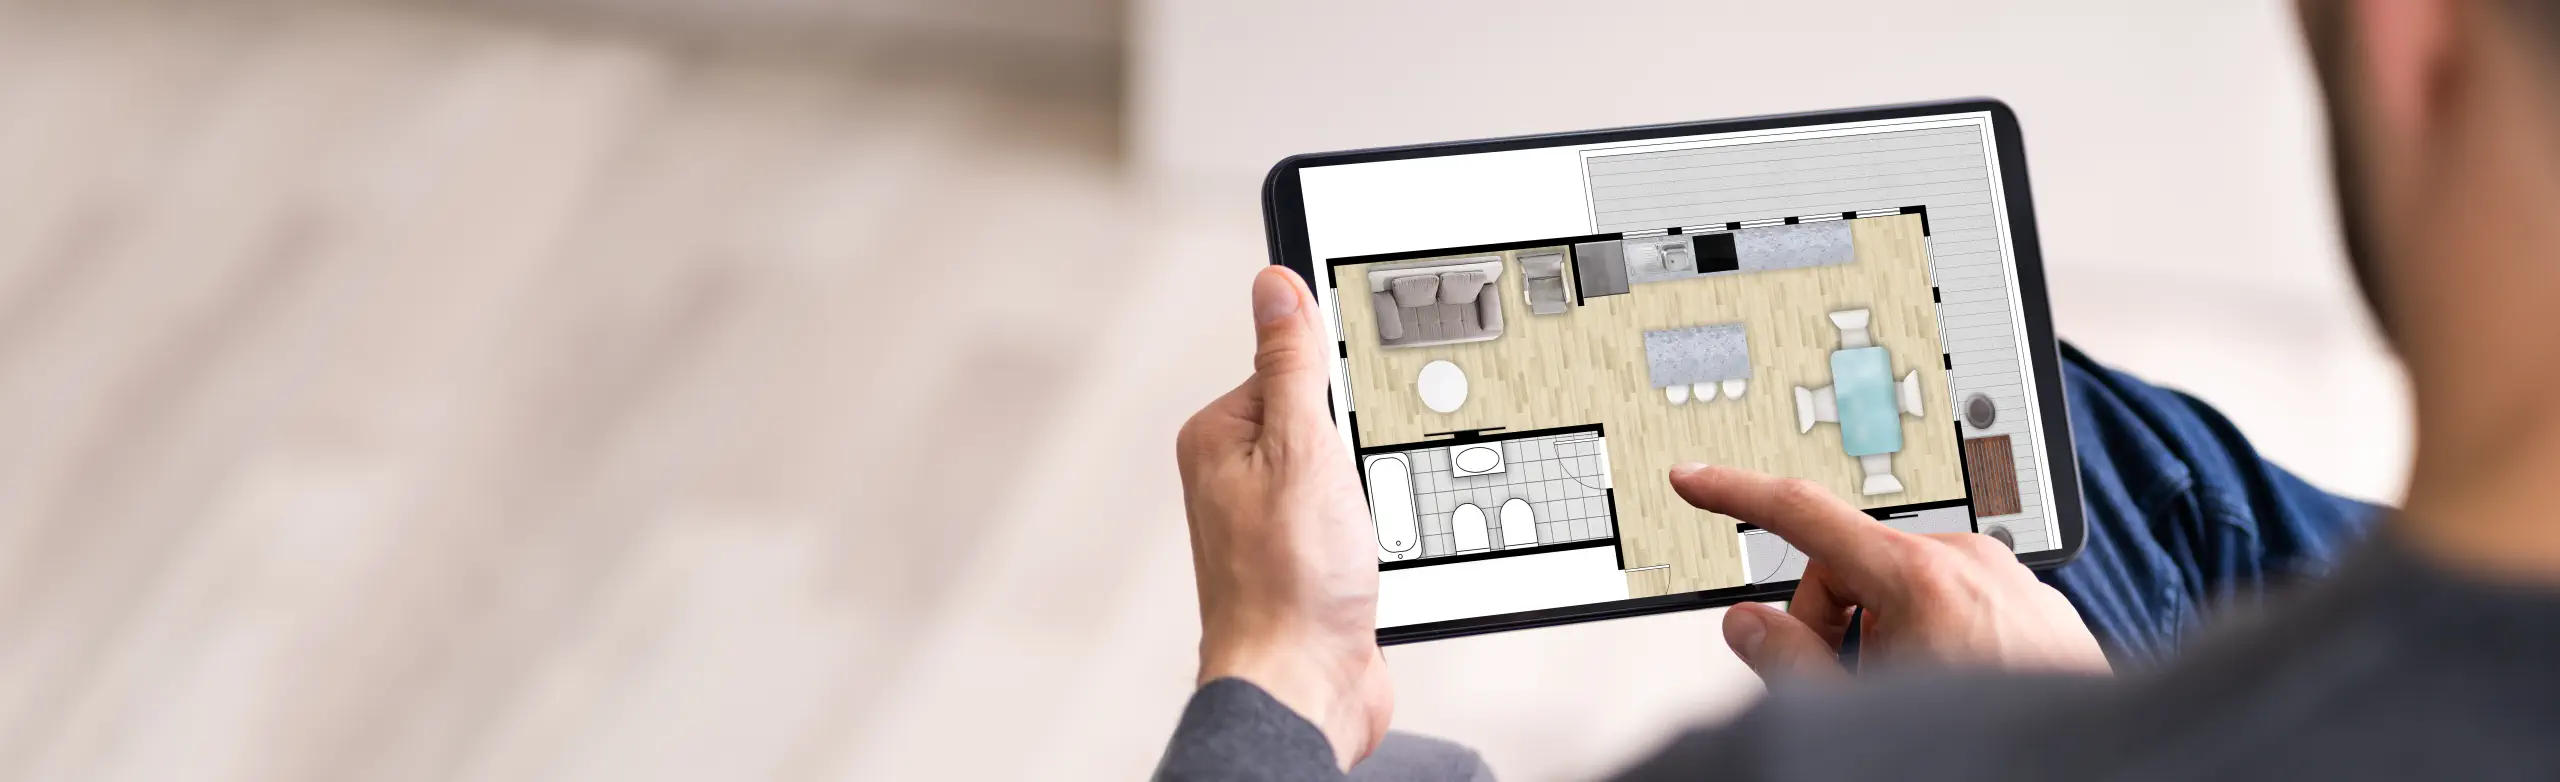 Immobilienmakler zeigt Grundriss einer Immobilie auf einem Tablet